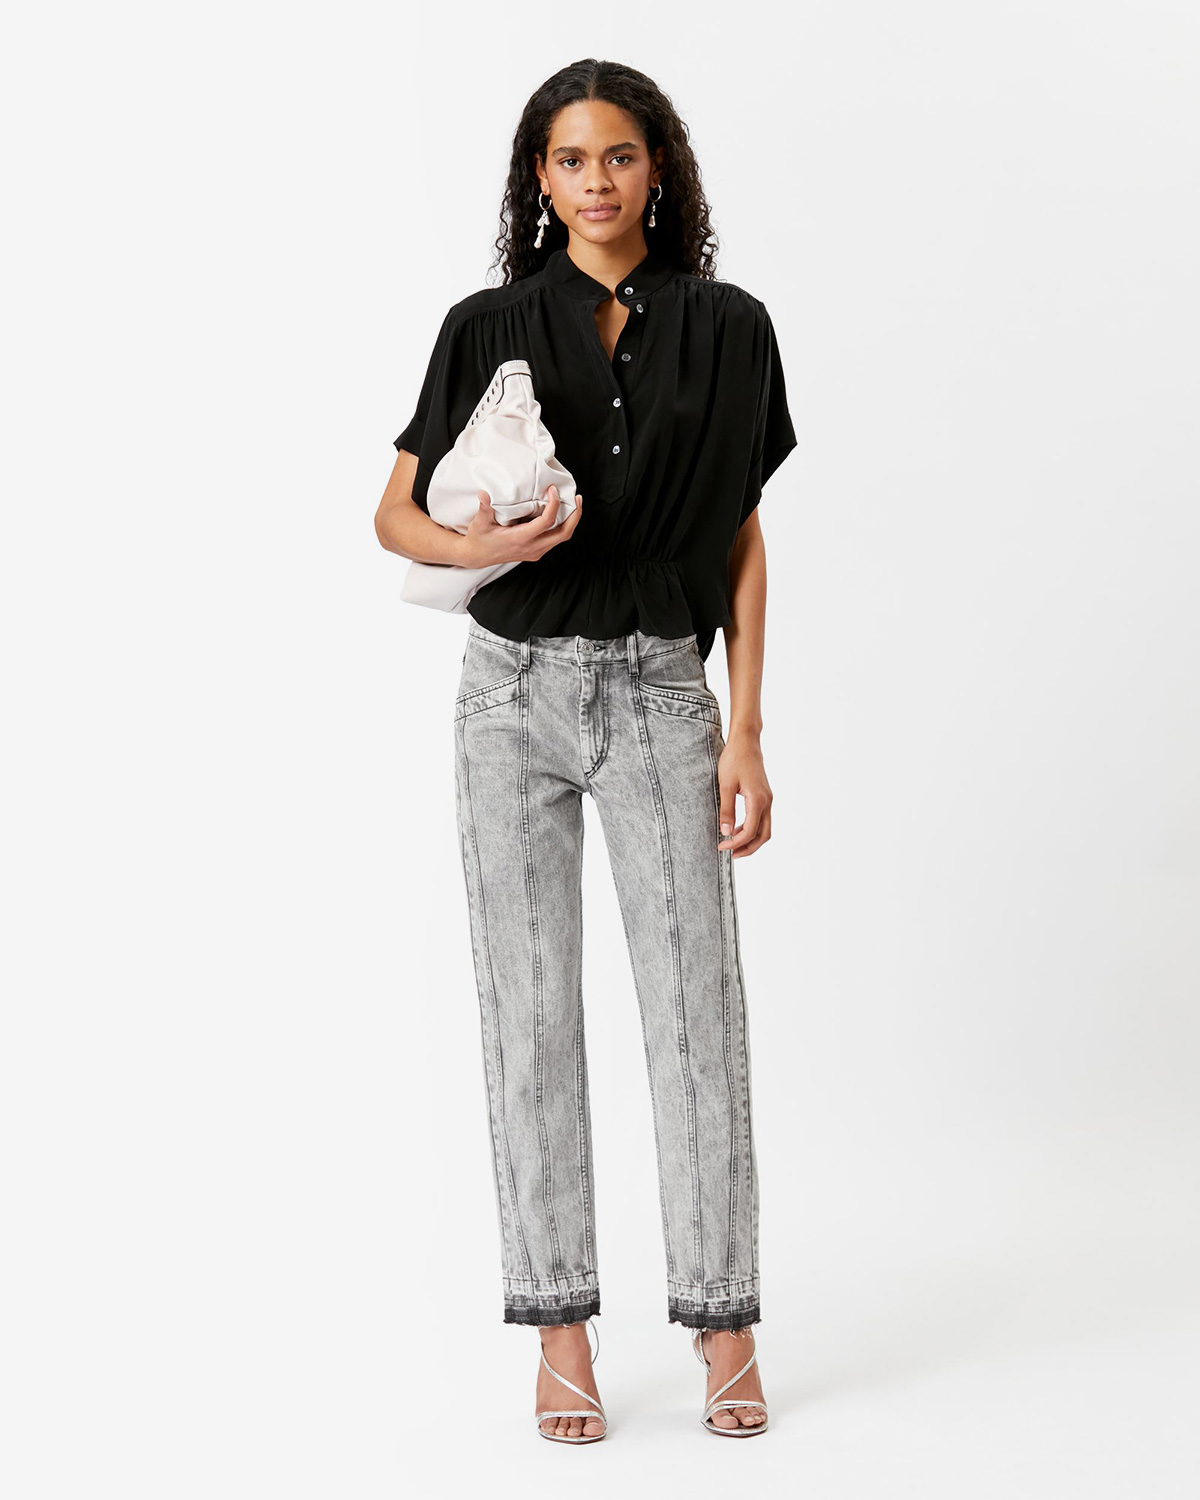 Top blouse court manches courtes en viscose noir Azalea Isabel Marant Etoile. Porté avec un jean gris. 